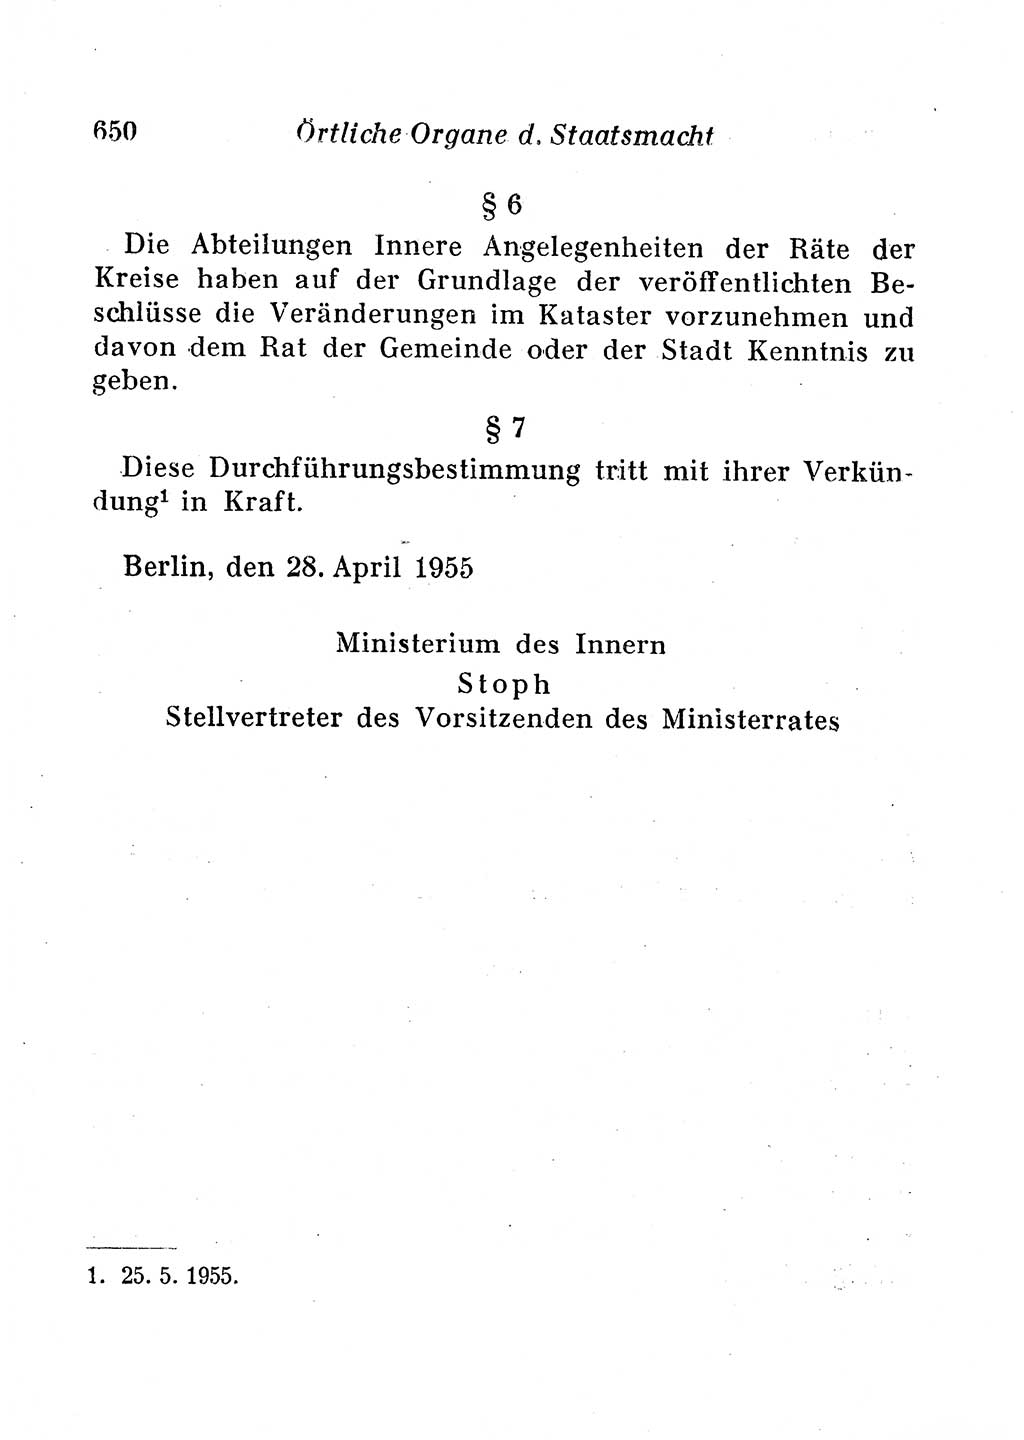 Staats- und verwaltungsrechtliche Gesetze der Deutschen Demokratischen Republik (DDR) 1958, Seite 650 (StVerwR Ges. DDR 1958, S. 650)